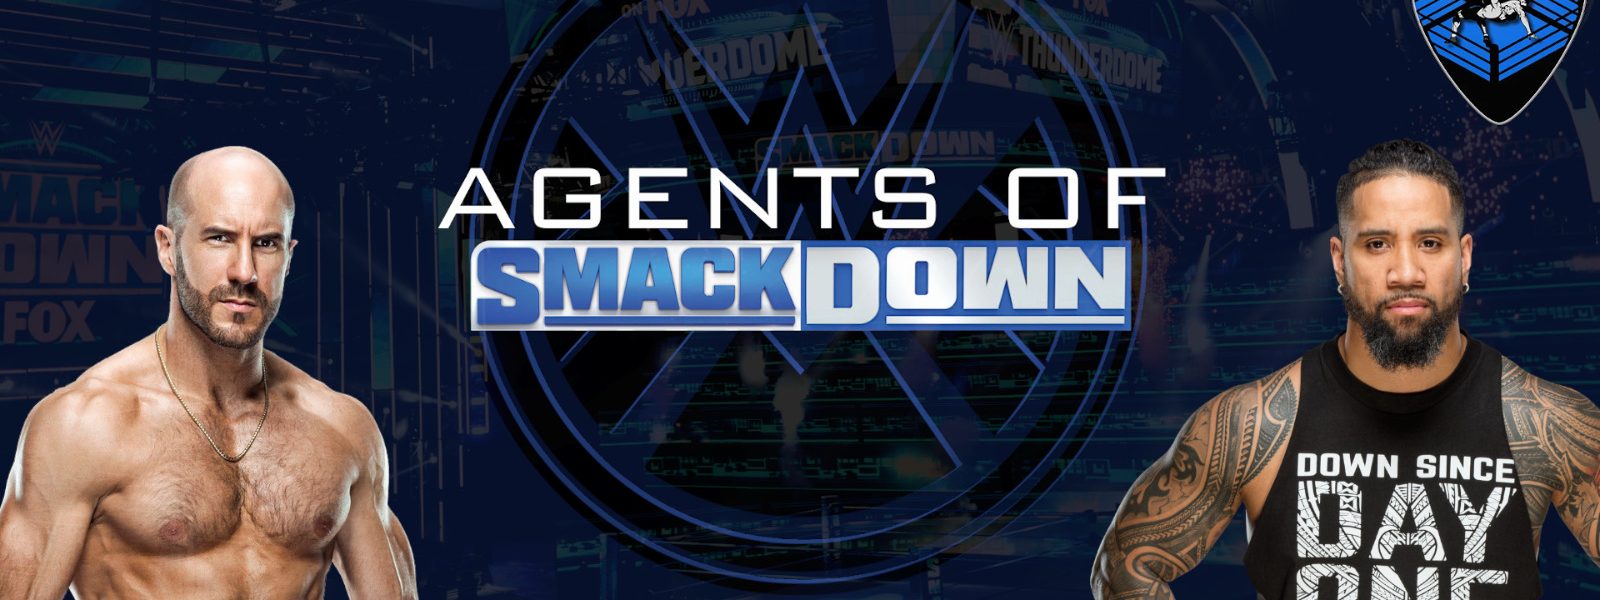 Affari di Famiglia - Agents Of Smackdown EP.6